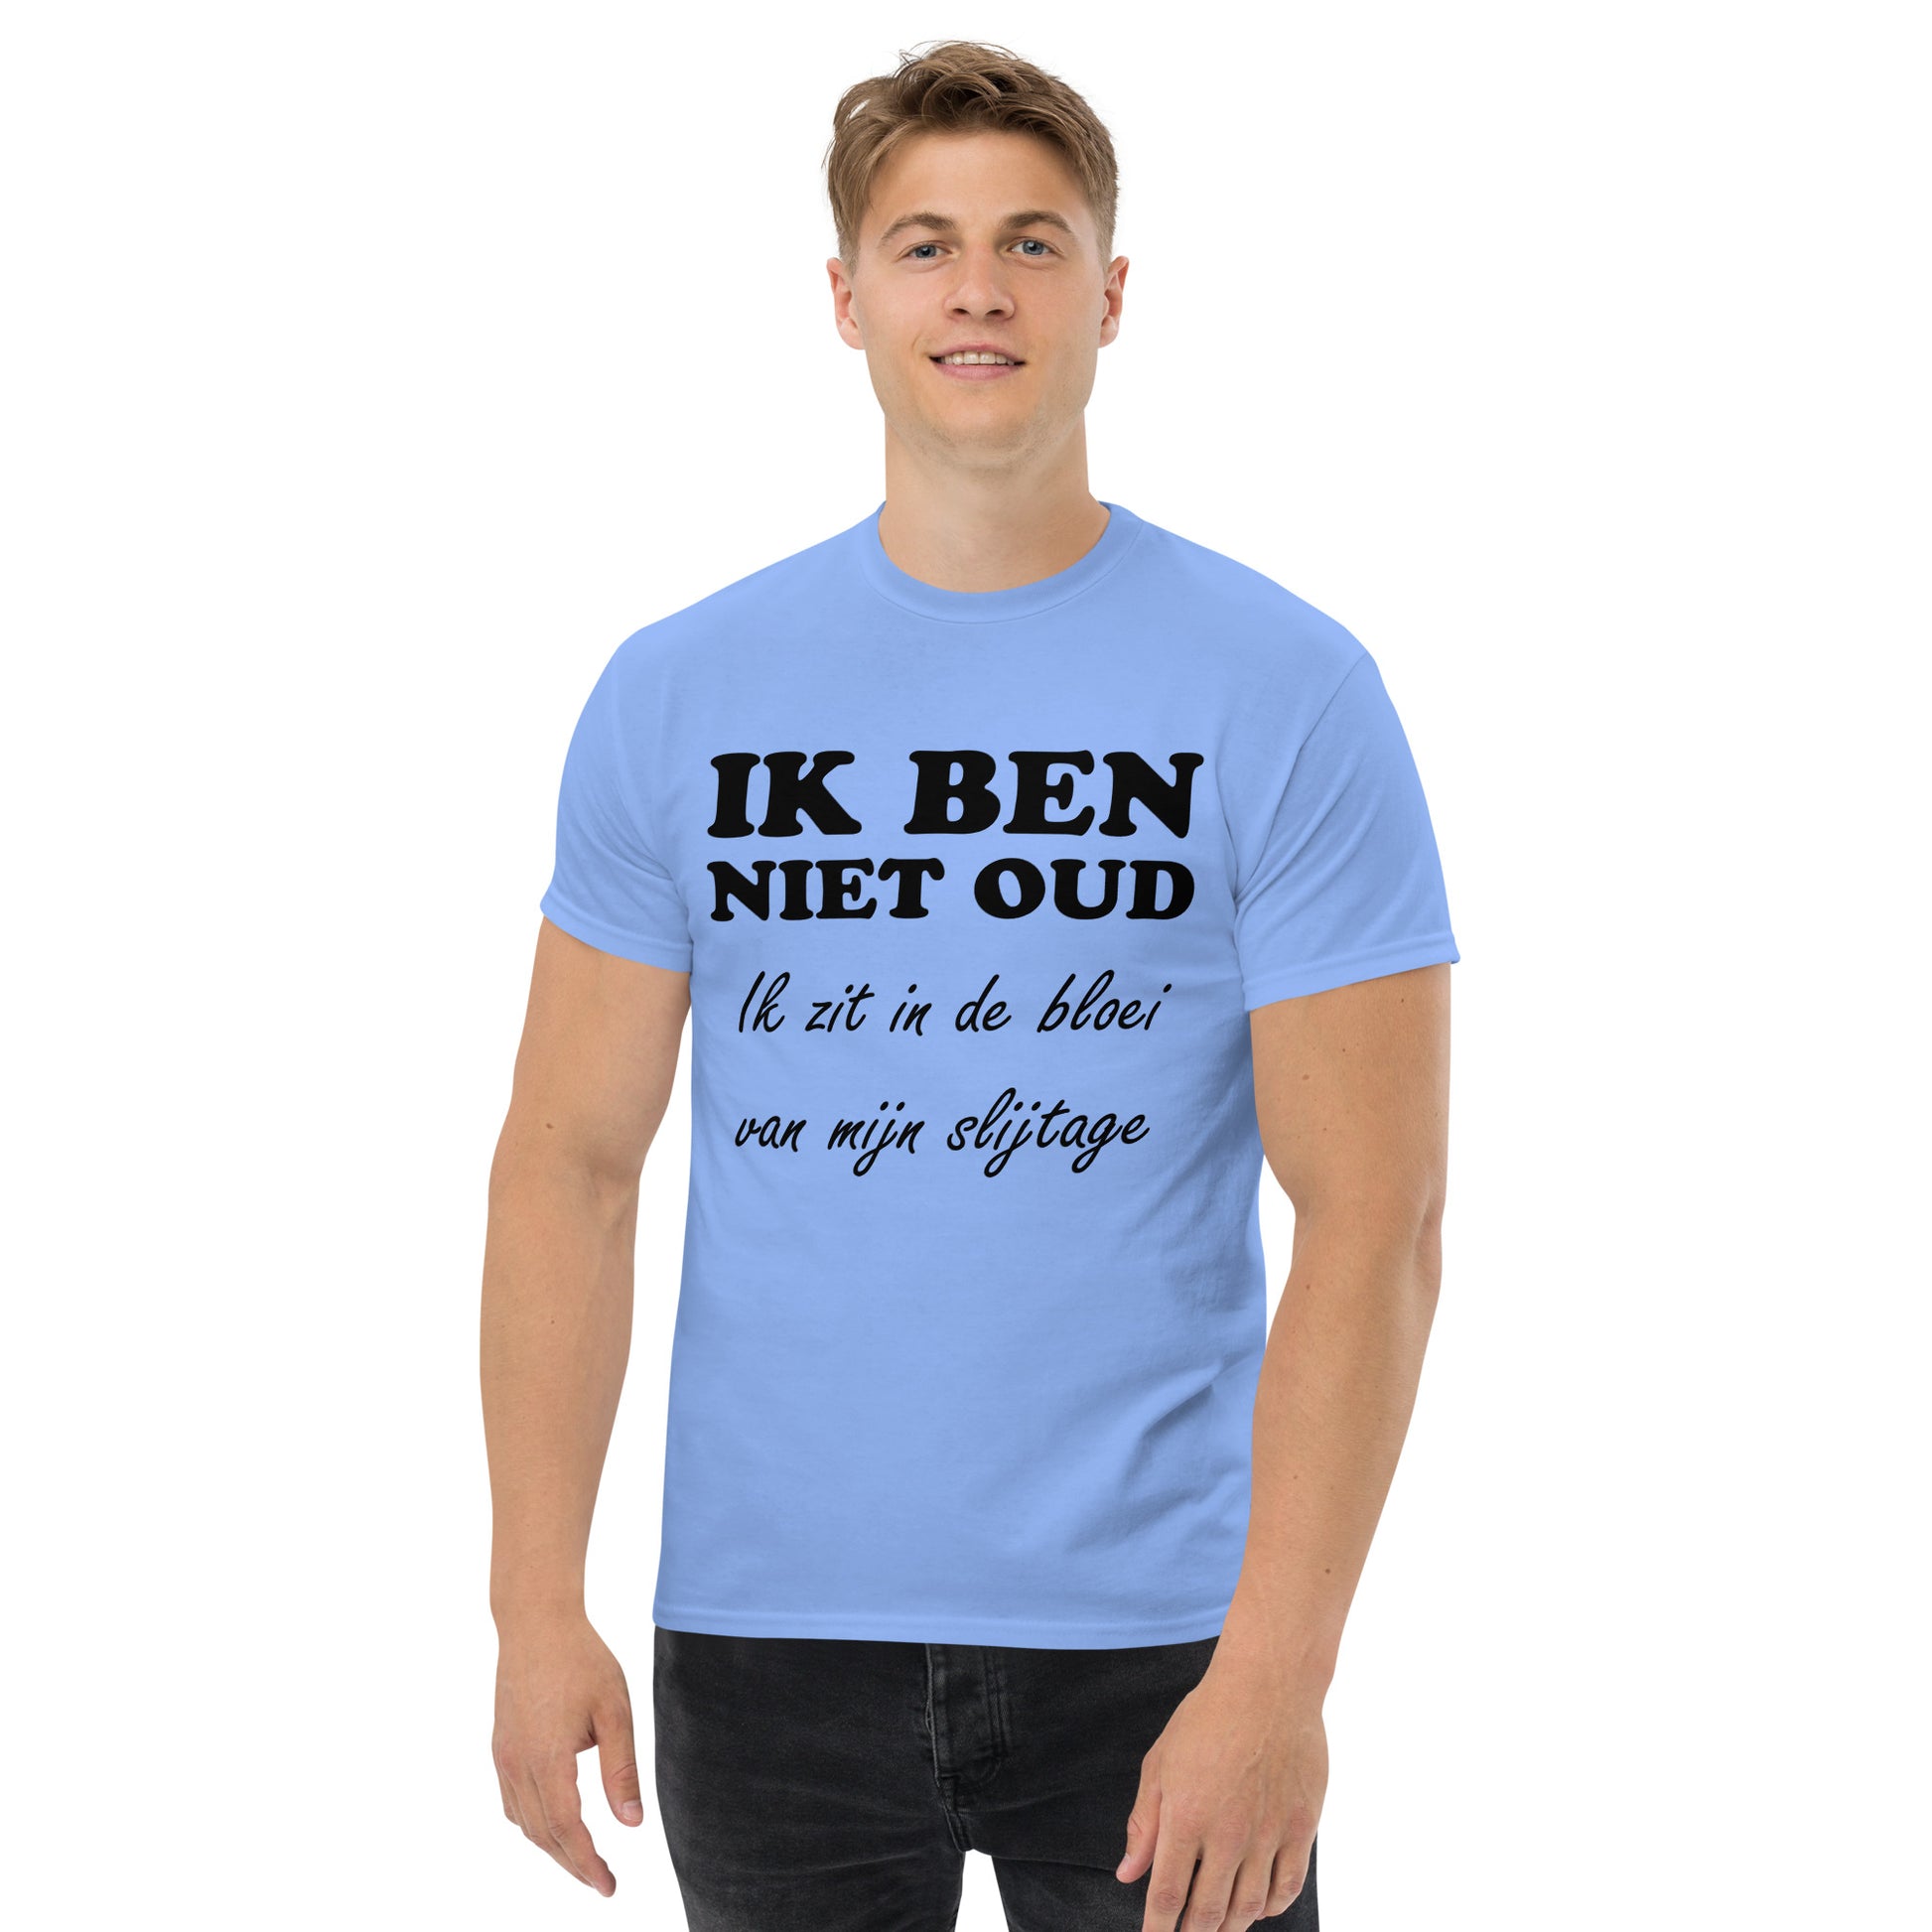 Carolina blue T-shirt with the text "IK BEN NIET OUD ik zit in de bloei van mijn slijtage"